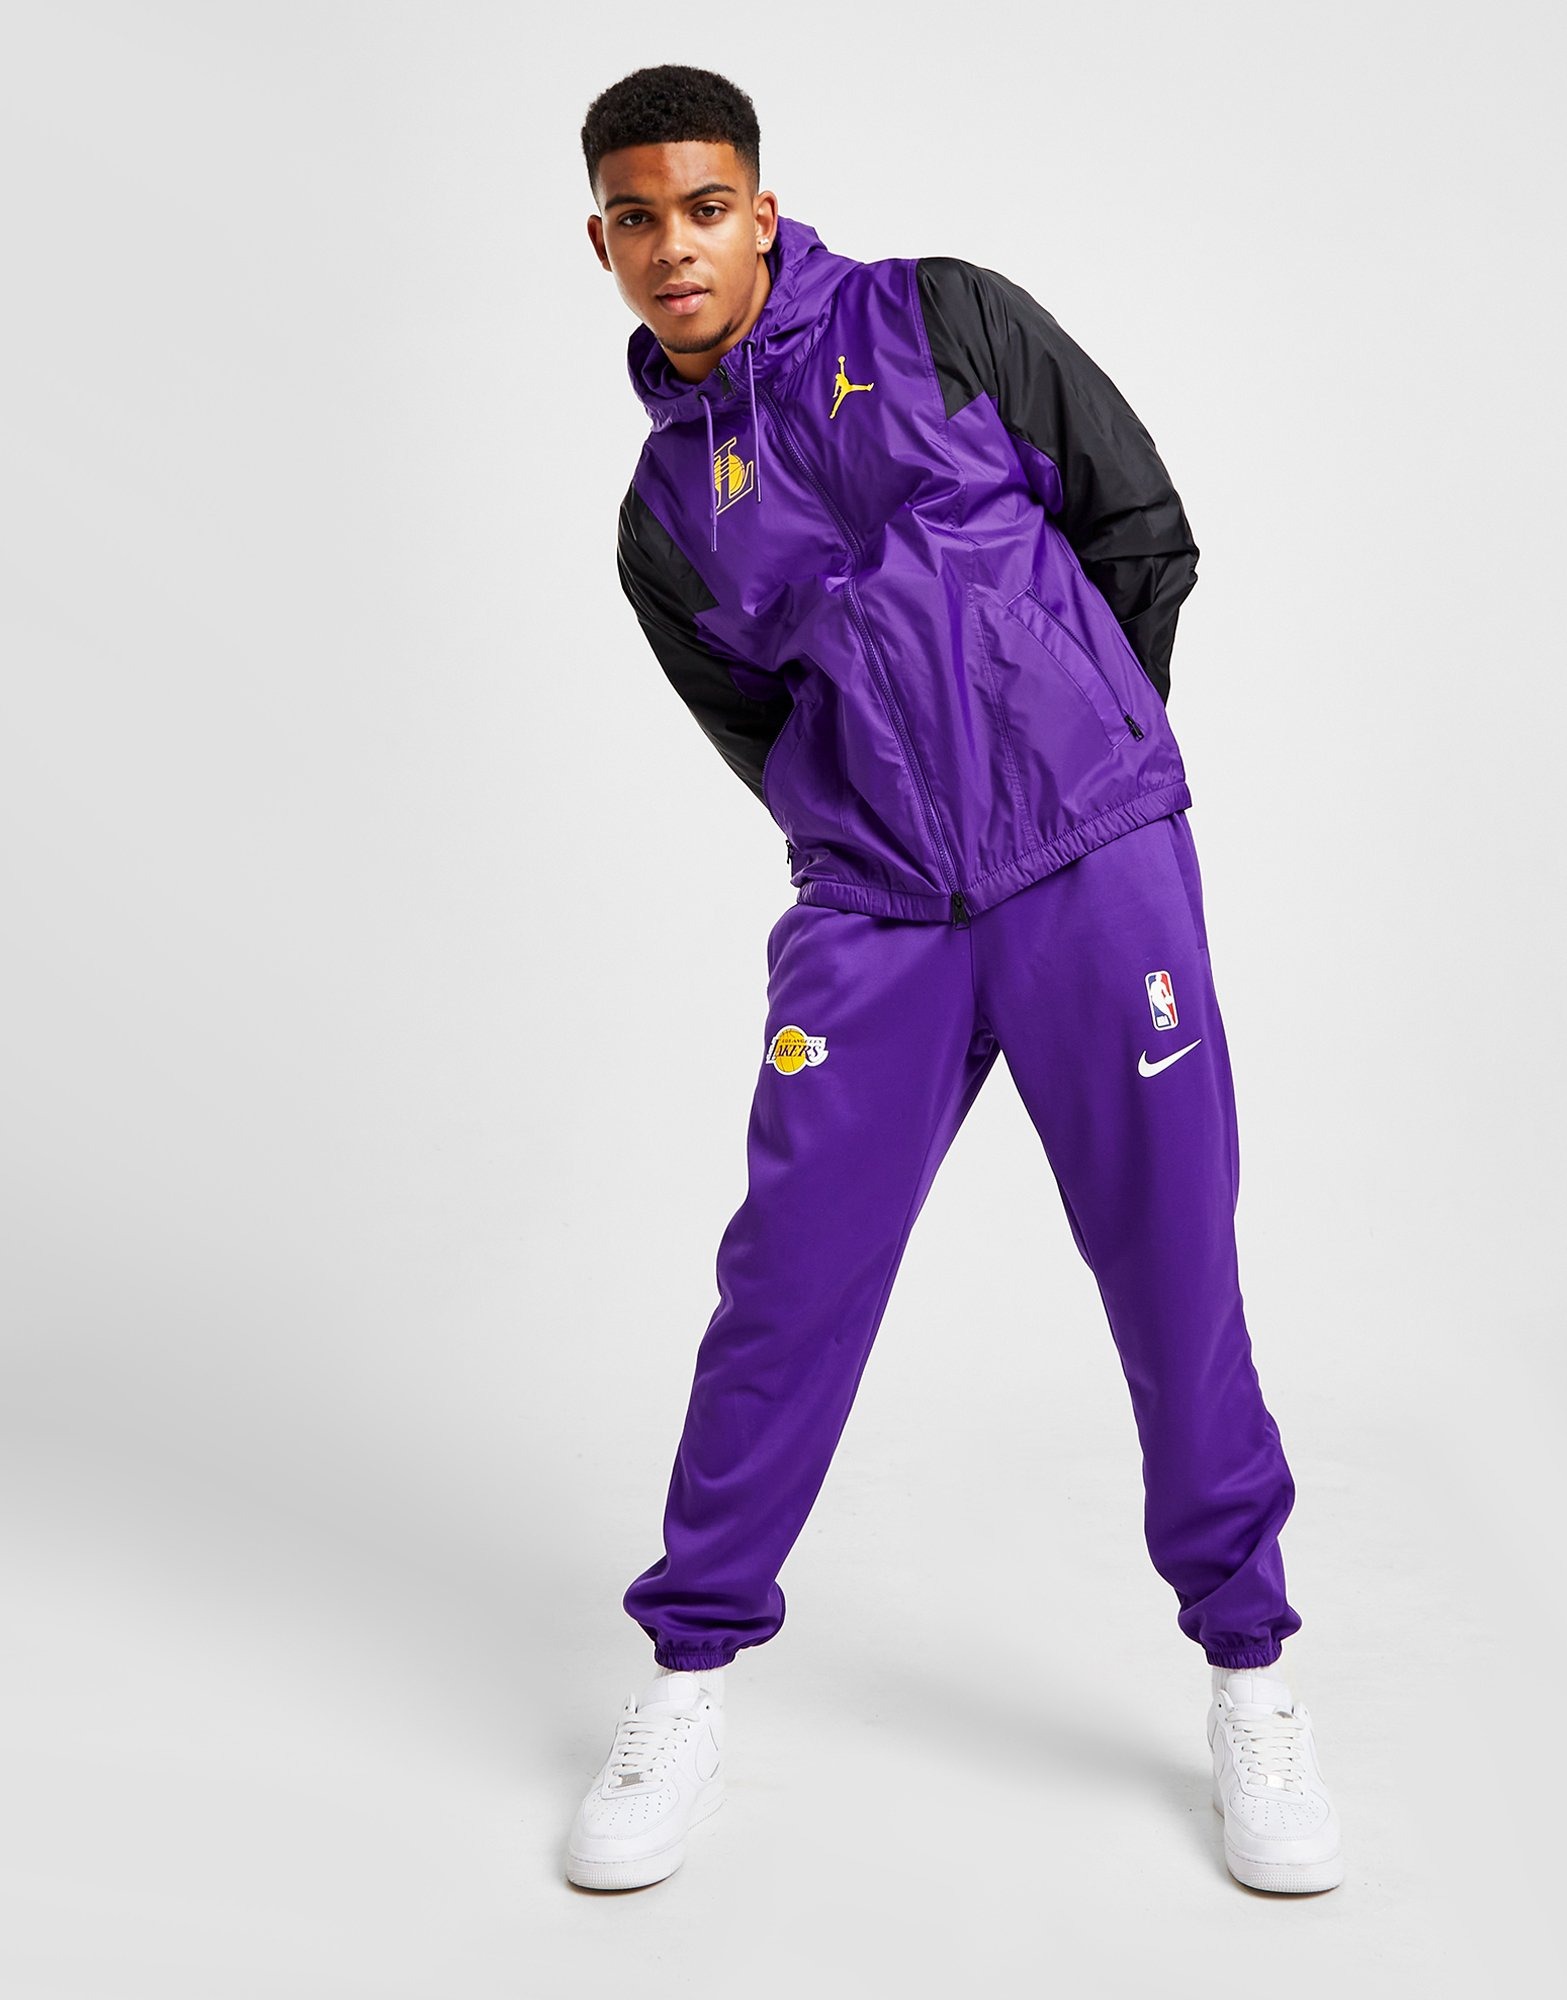 Nike LA Lakers NBA Spotlight Warm Up Pants Men's Large